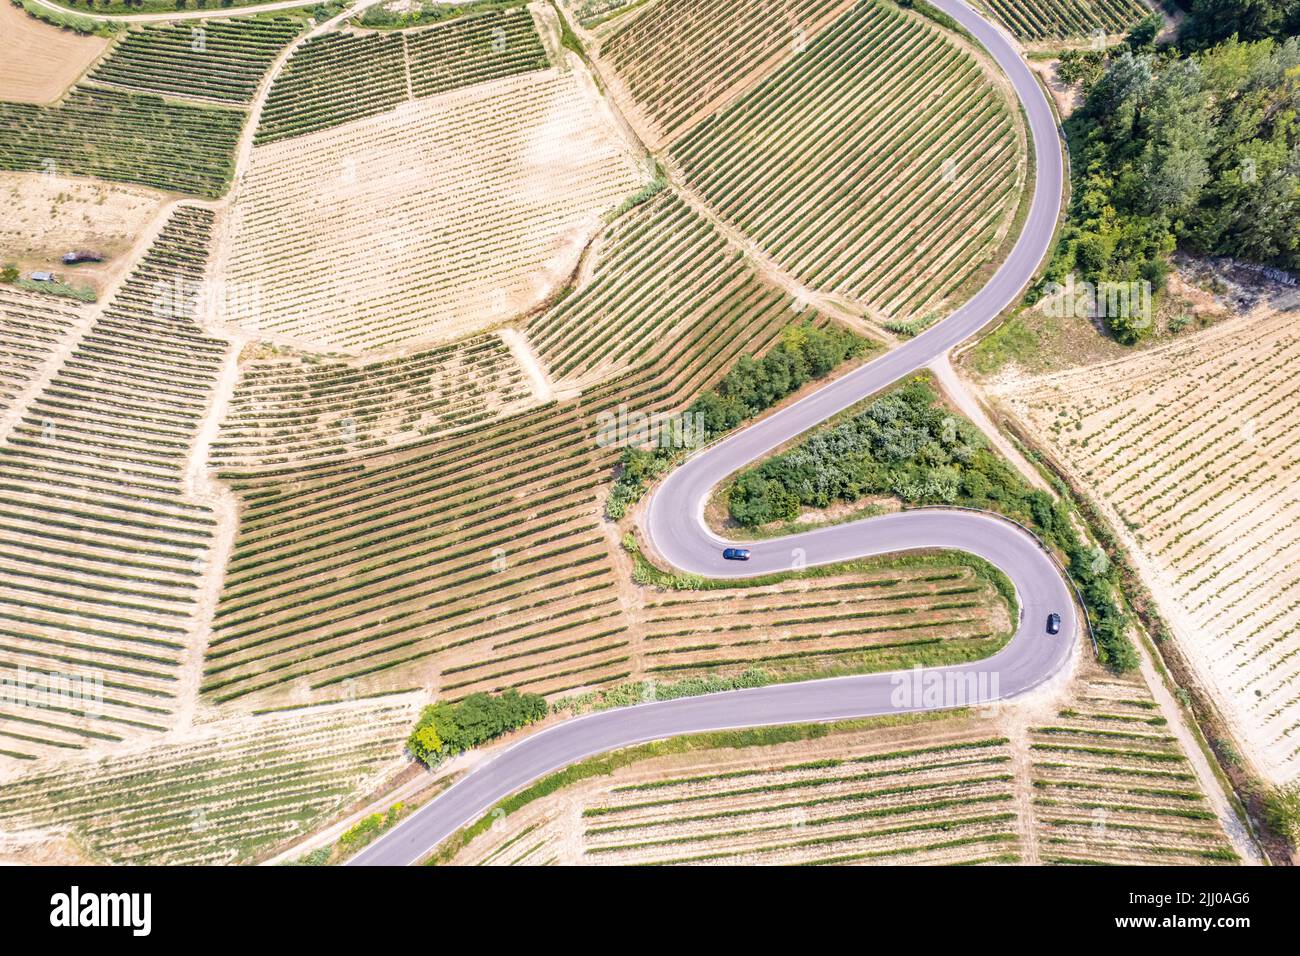 Panoramica aerea della strada Romantica delle Langhe e del Roero tra paesaggi infiniti di vigneti. Piemonte Italia Foto Stock